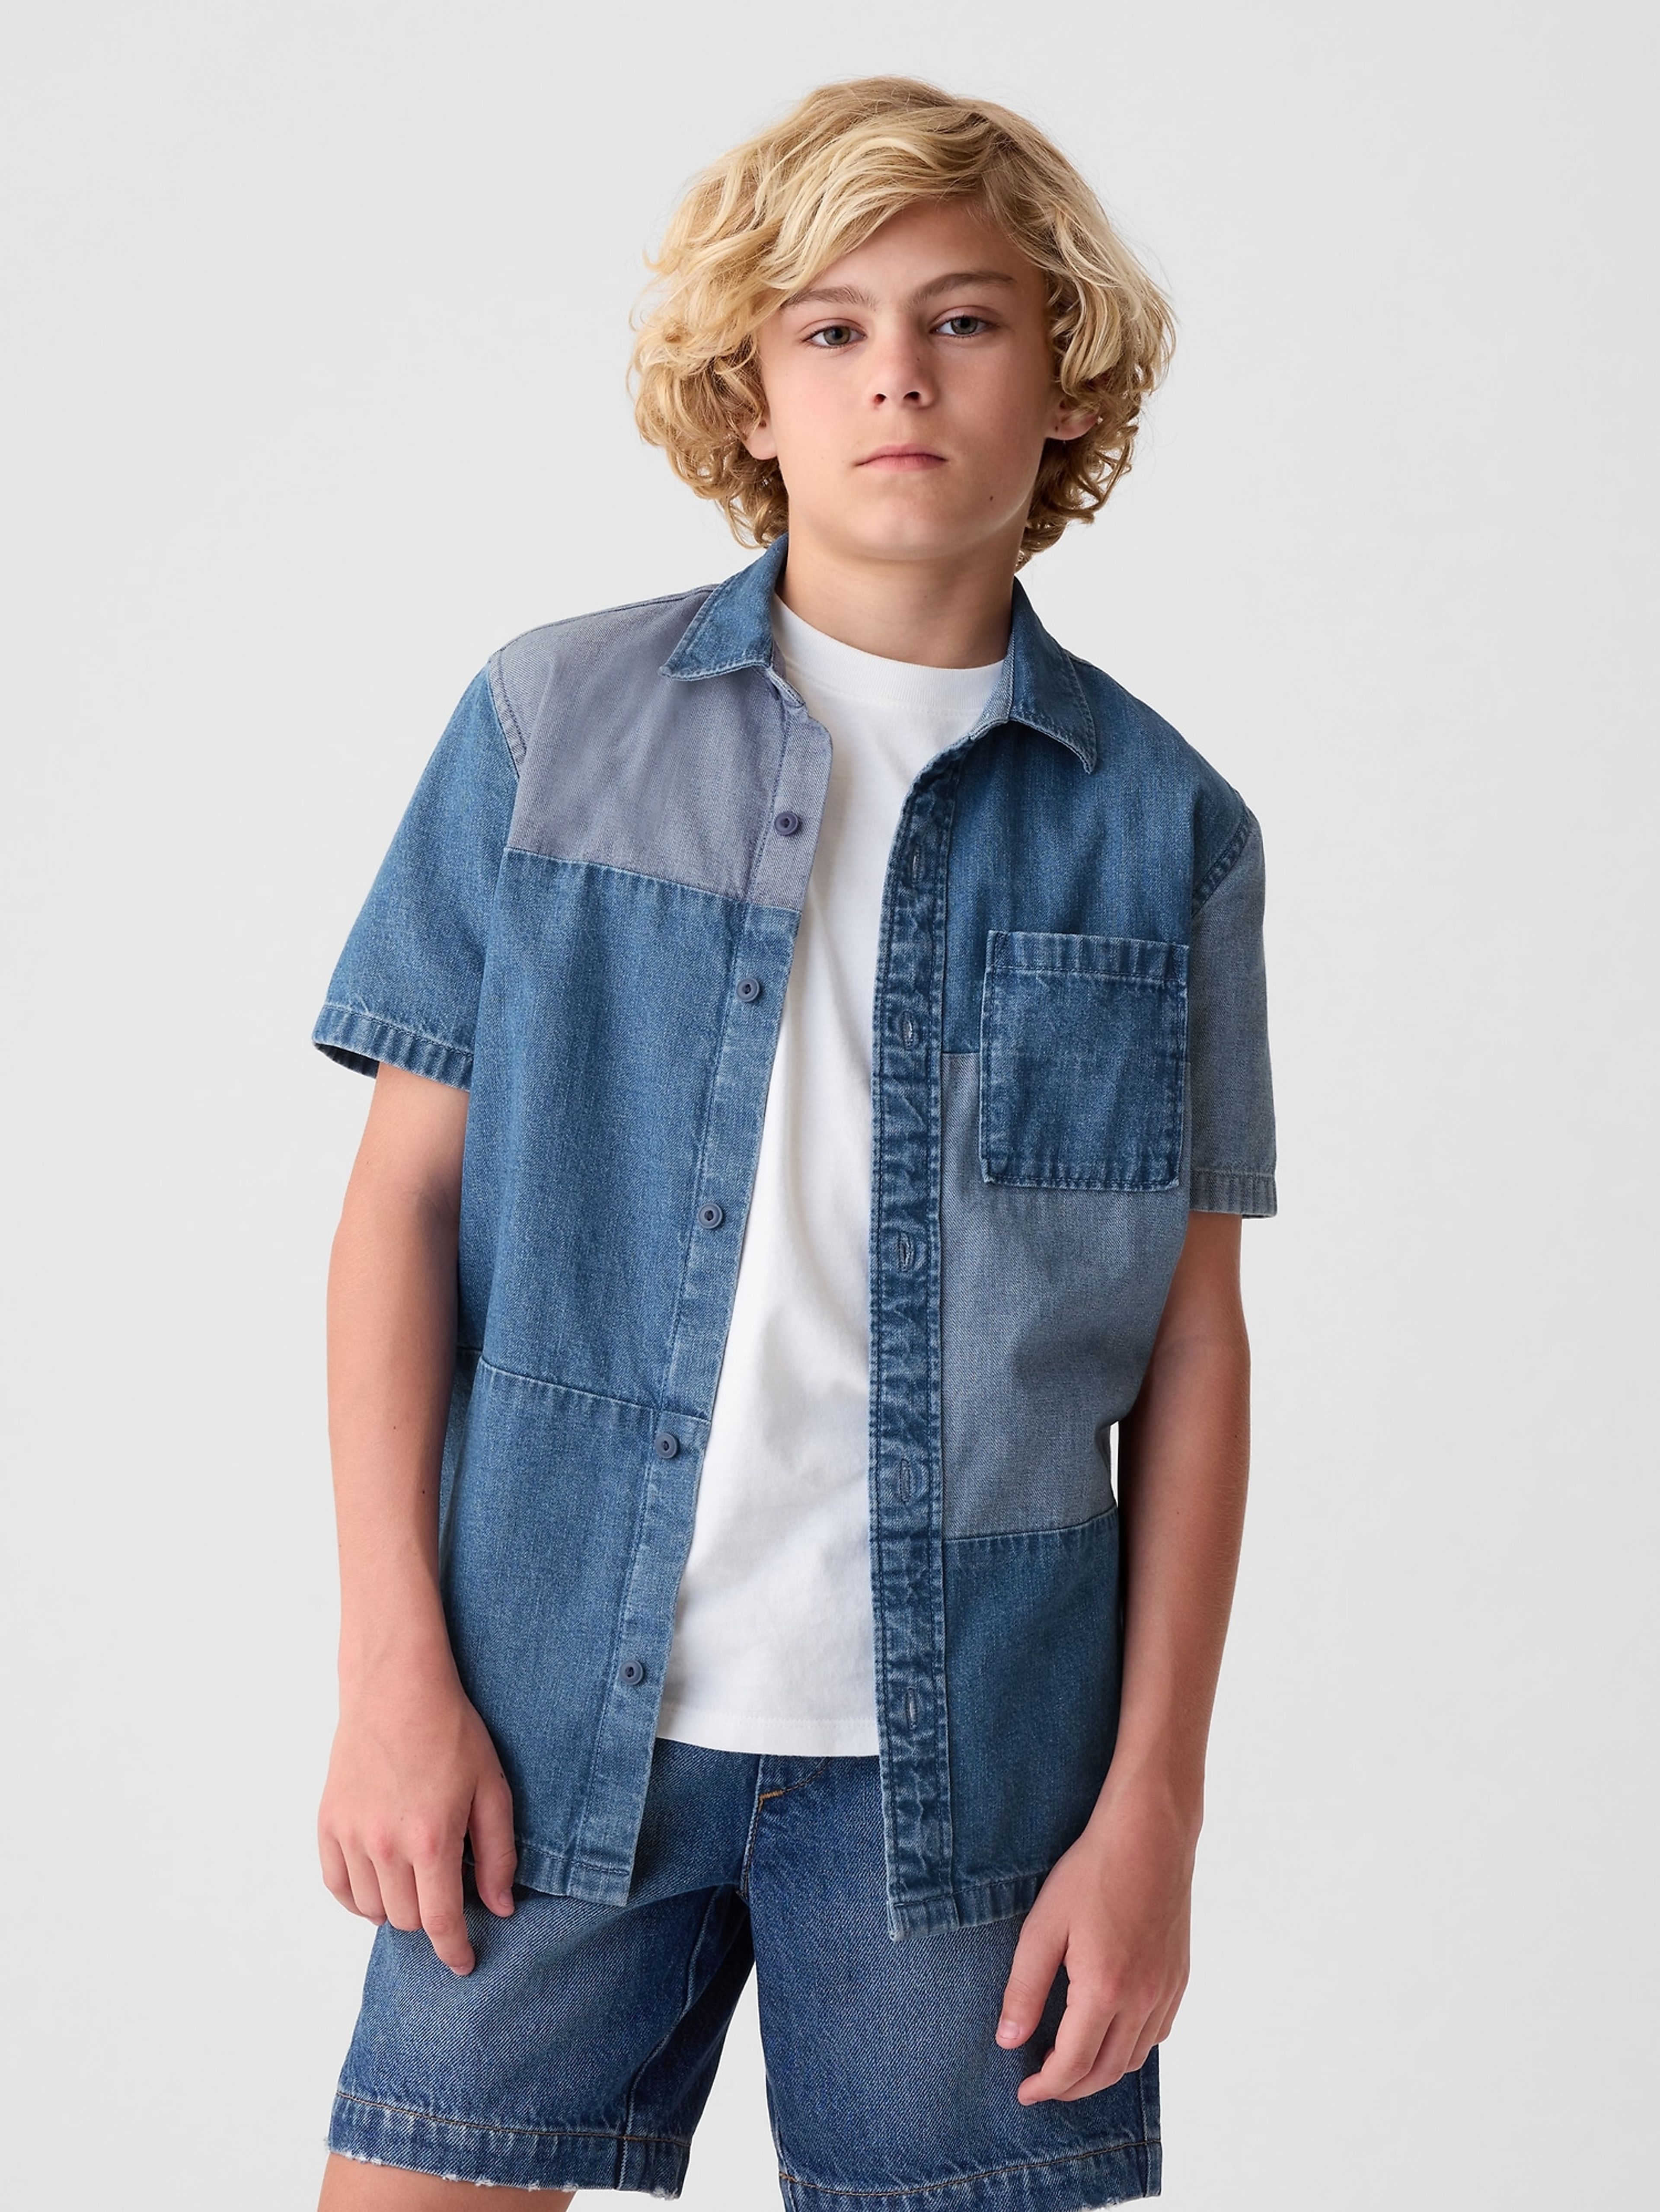 Jeans-Patchwork-Shirt für Kinder